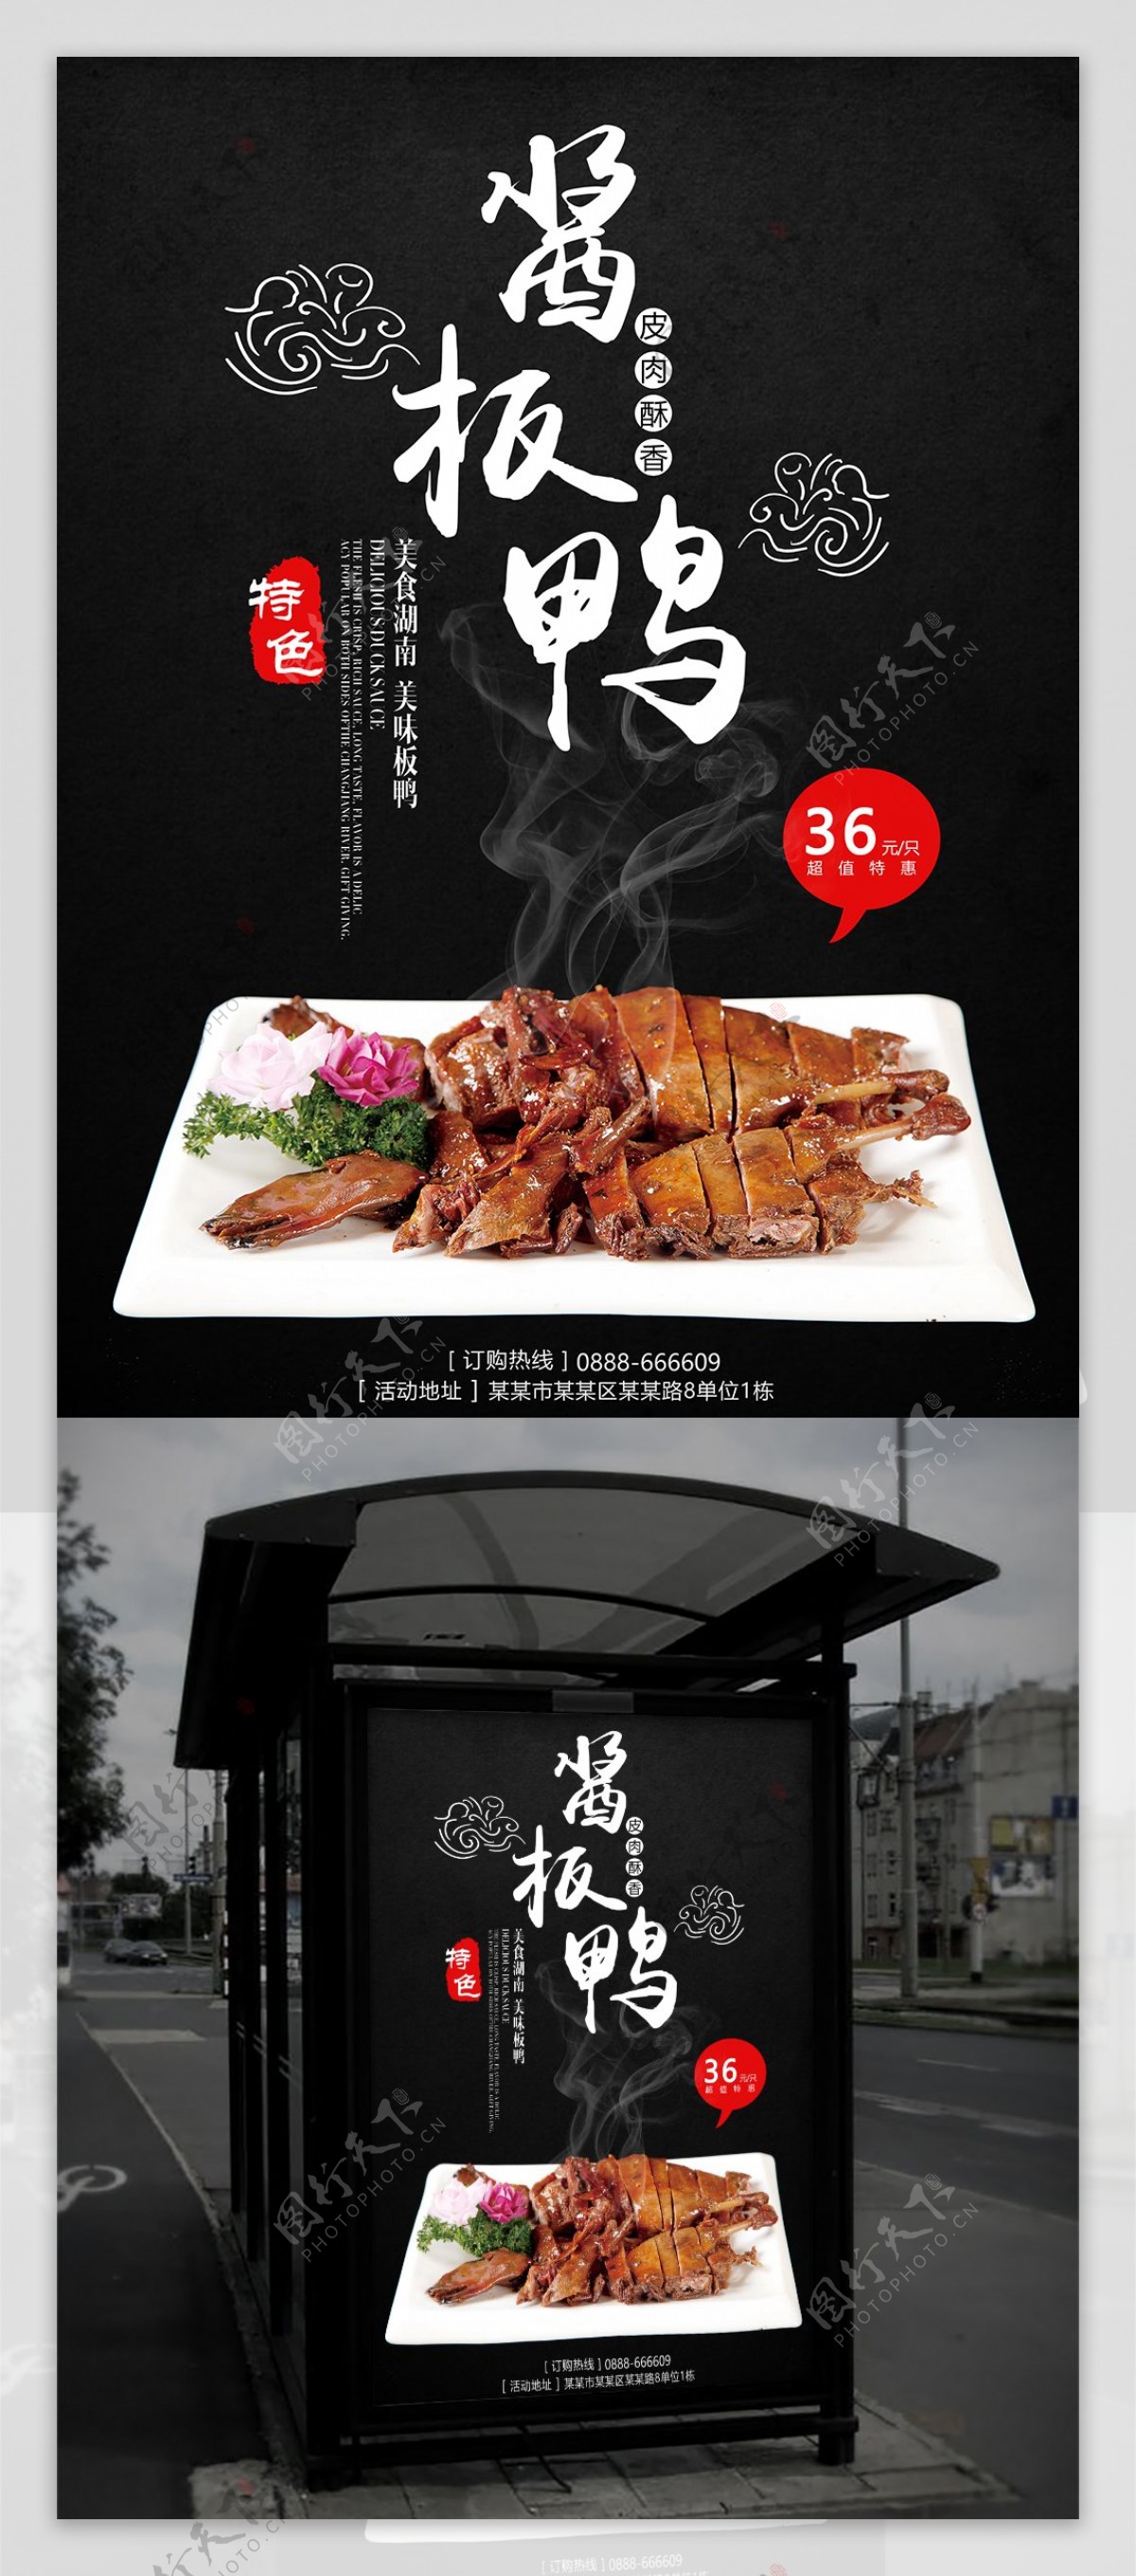 湖南美食中国风特色美味酱板鸭餐厅促销海报